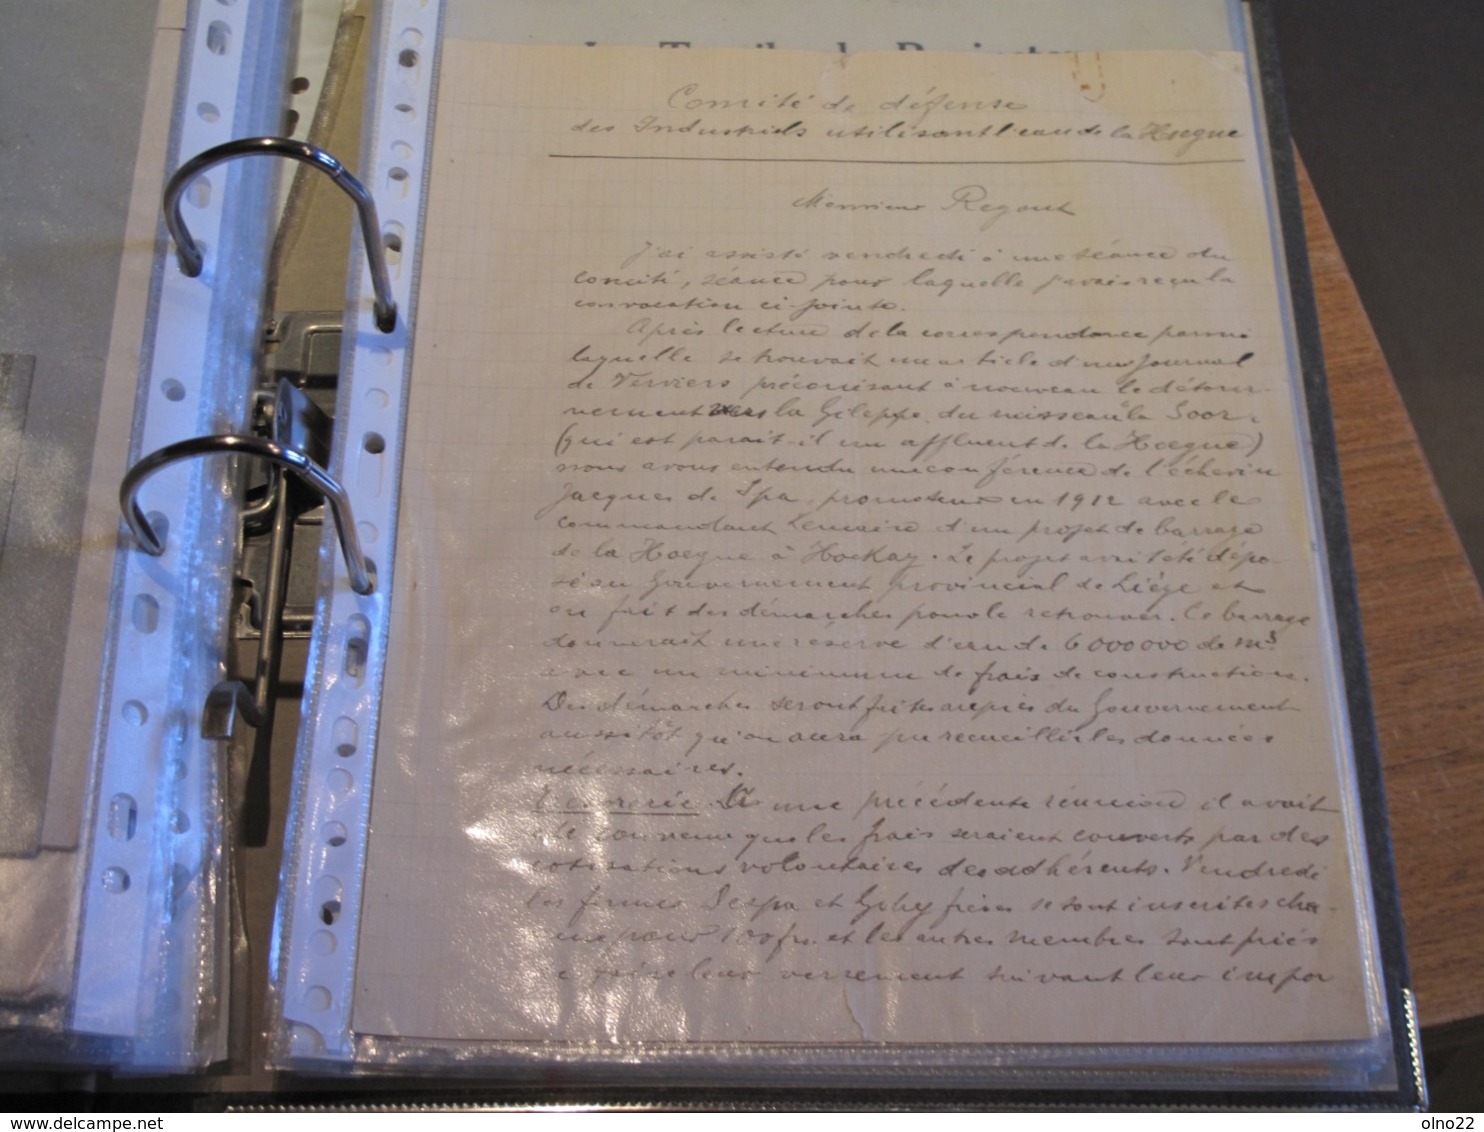 LA TEXTILE DE PEPINSTER-DE 1776 à 1953-divers documents dont carte relevée en 1776 par arpenteur H LERUTH voir scans